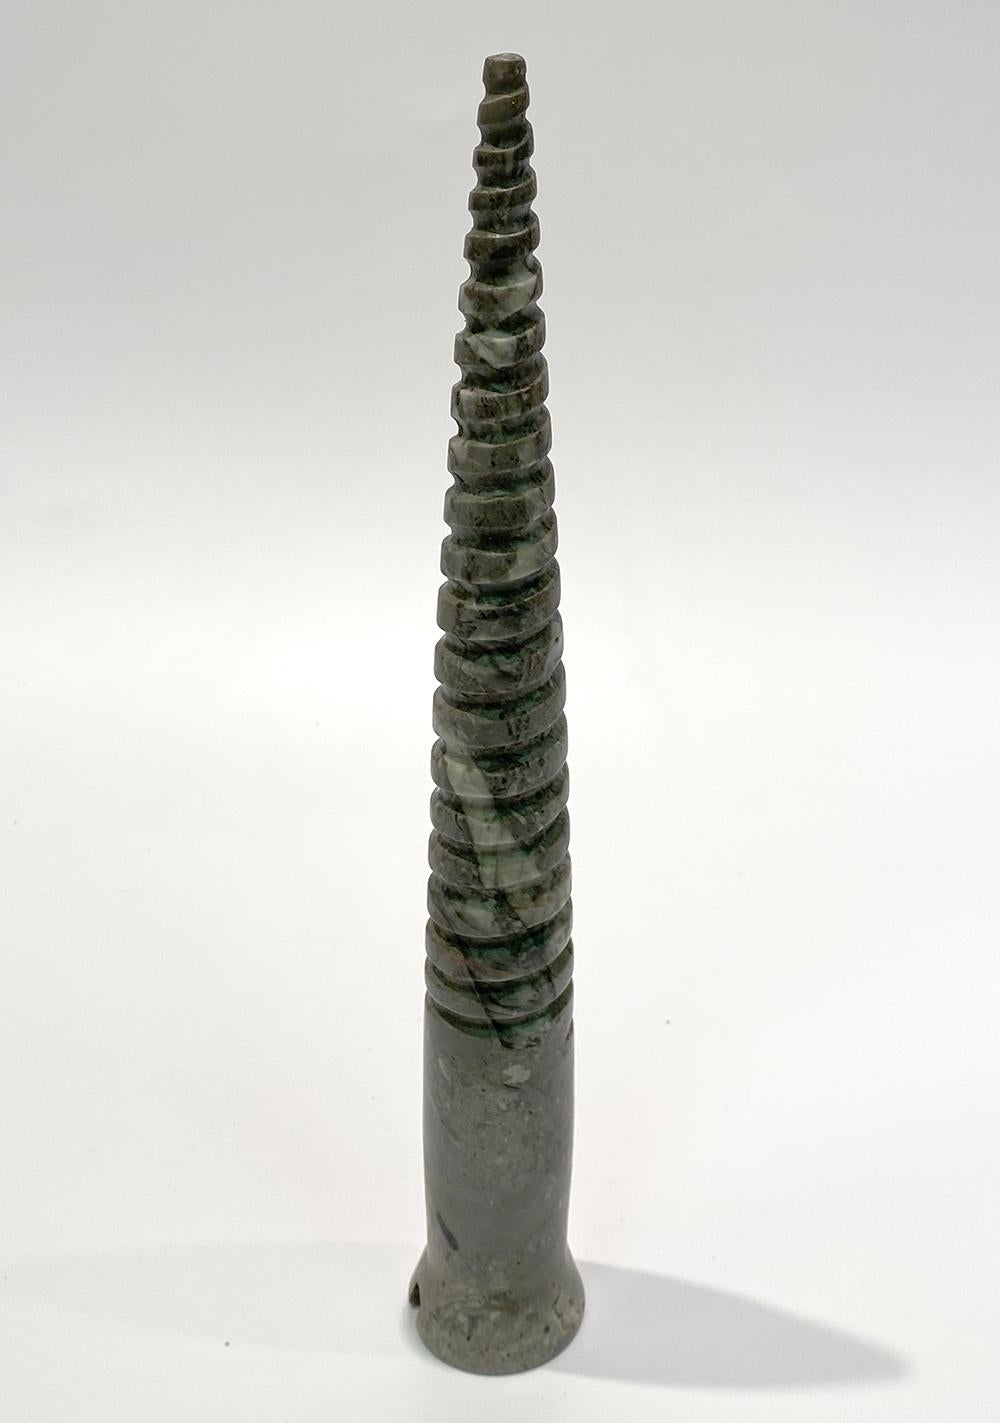 Lange Schraube von KARTEL – einzigartige handgeschnitzte Marmorskulptur – glänzende Oberfläche